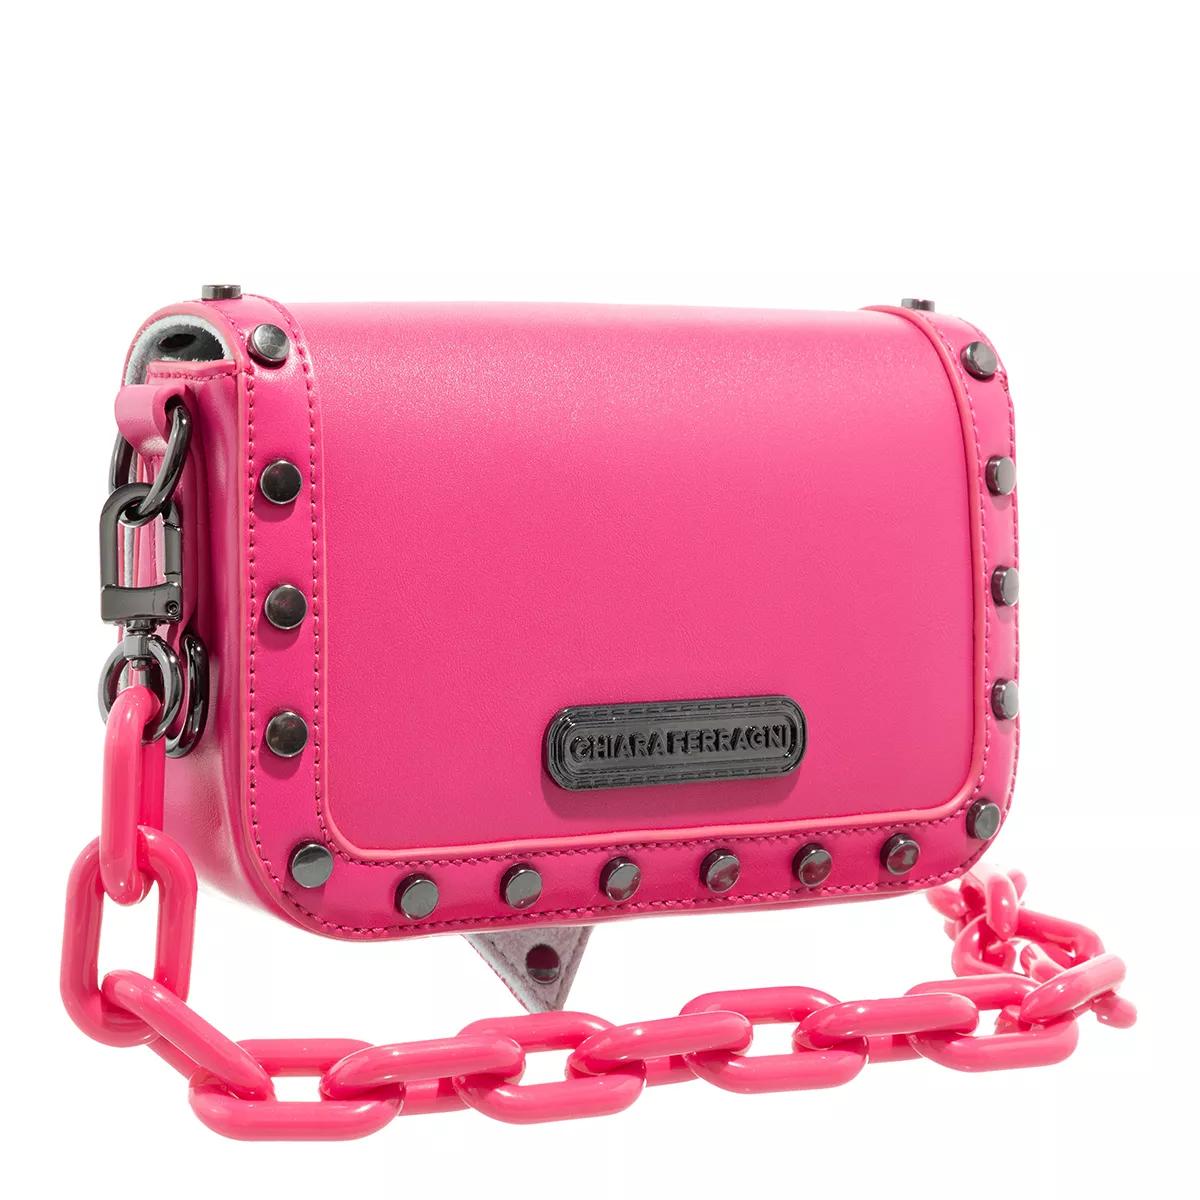 Chiara Ferragni Crossbody bags Range A Eyelike Bags Sketch 02 Bags in roze